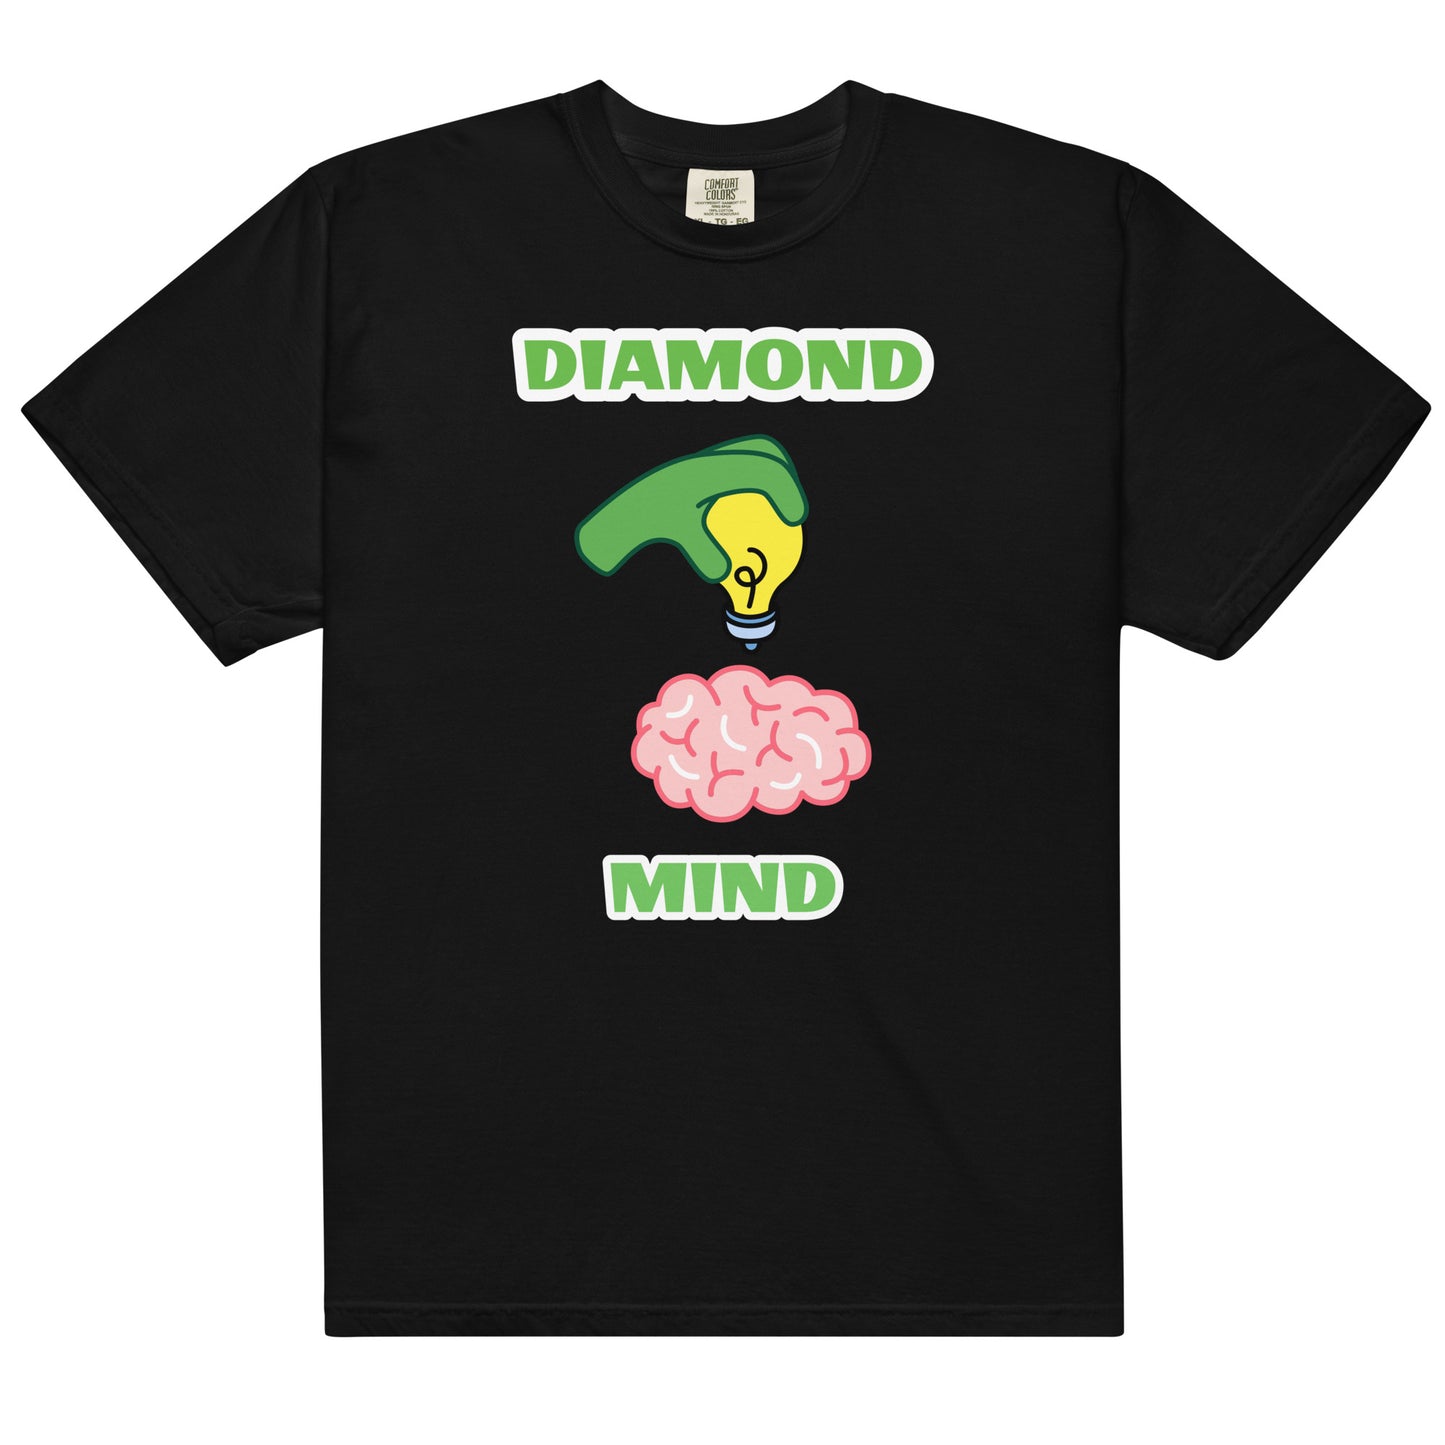 Diamond Mind "Bright Idea" T-Shirt